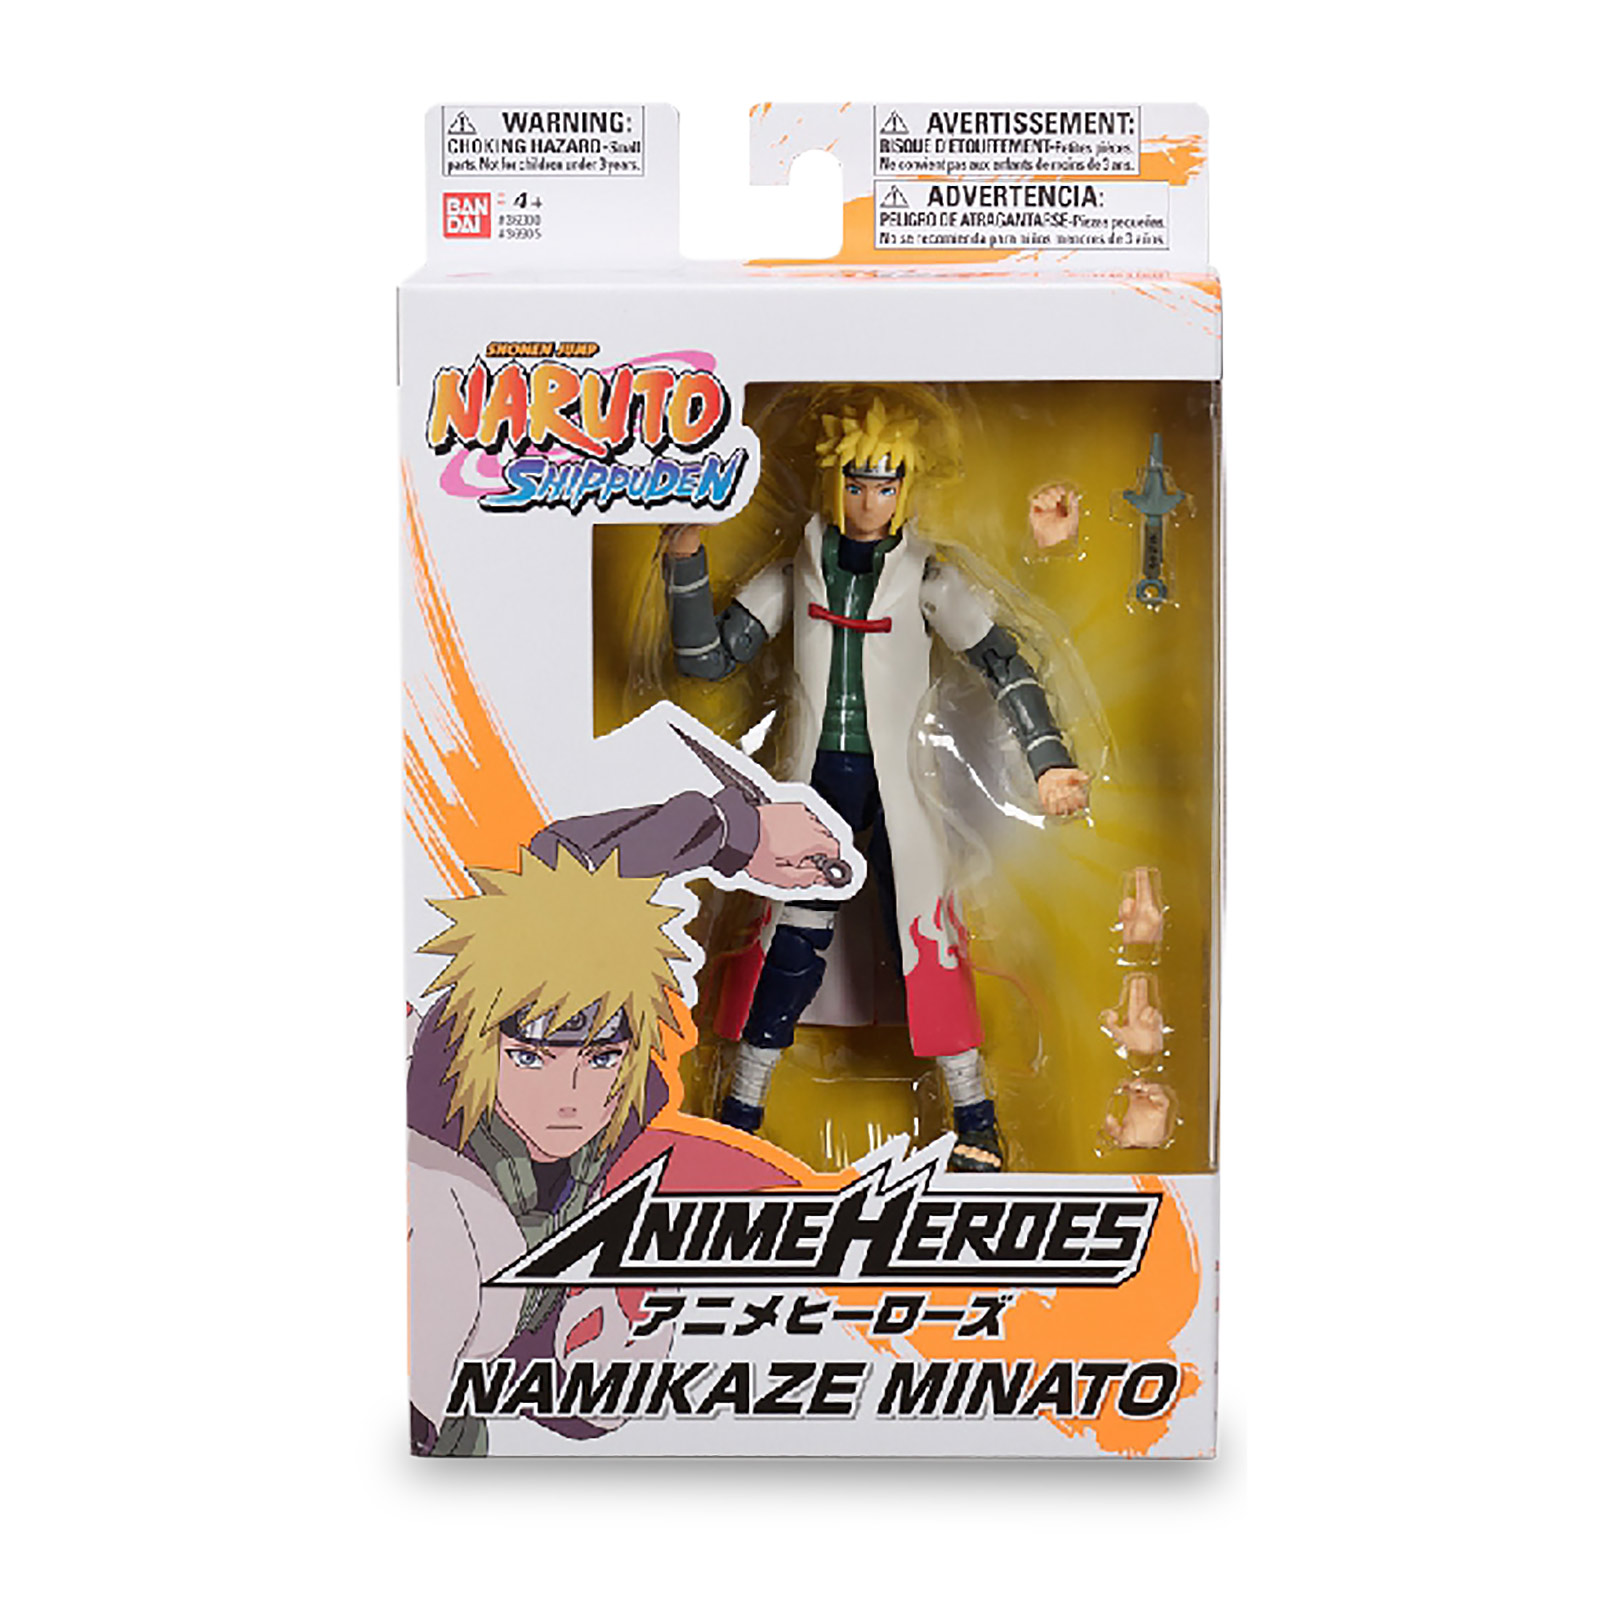 Naruto Shippuden - Namikaze Minato Anime Heroes Actiefiguur